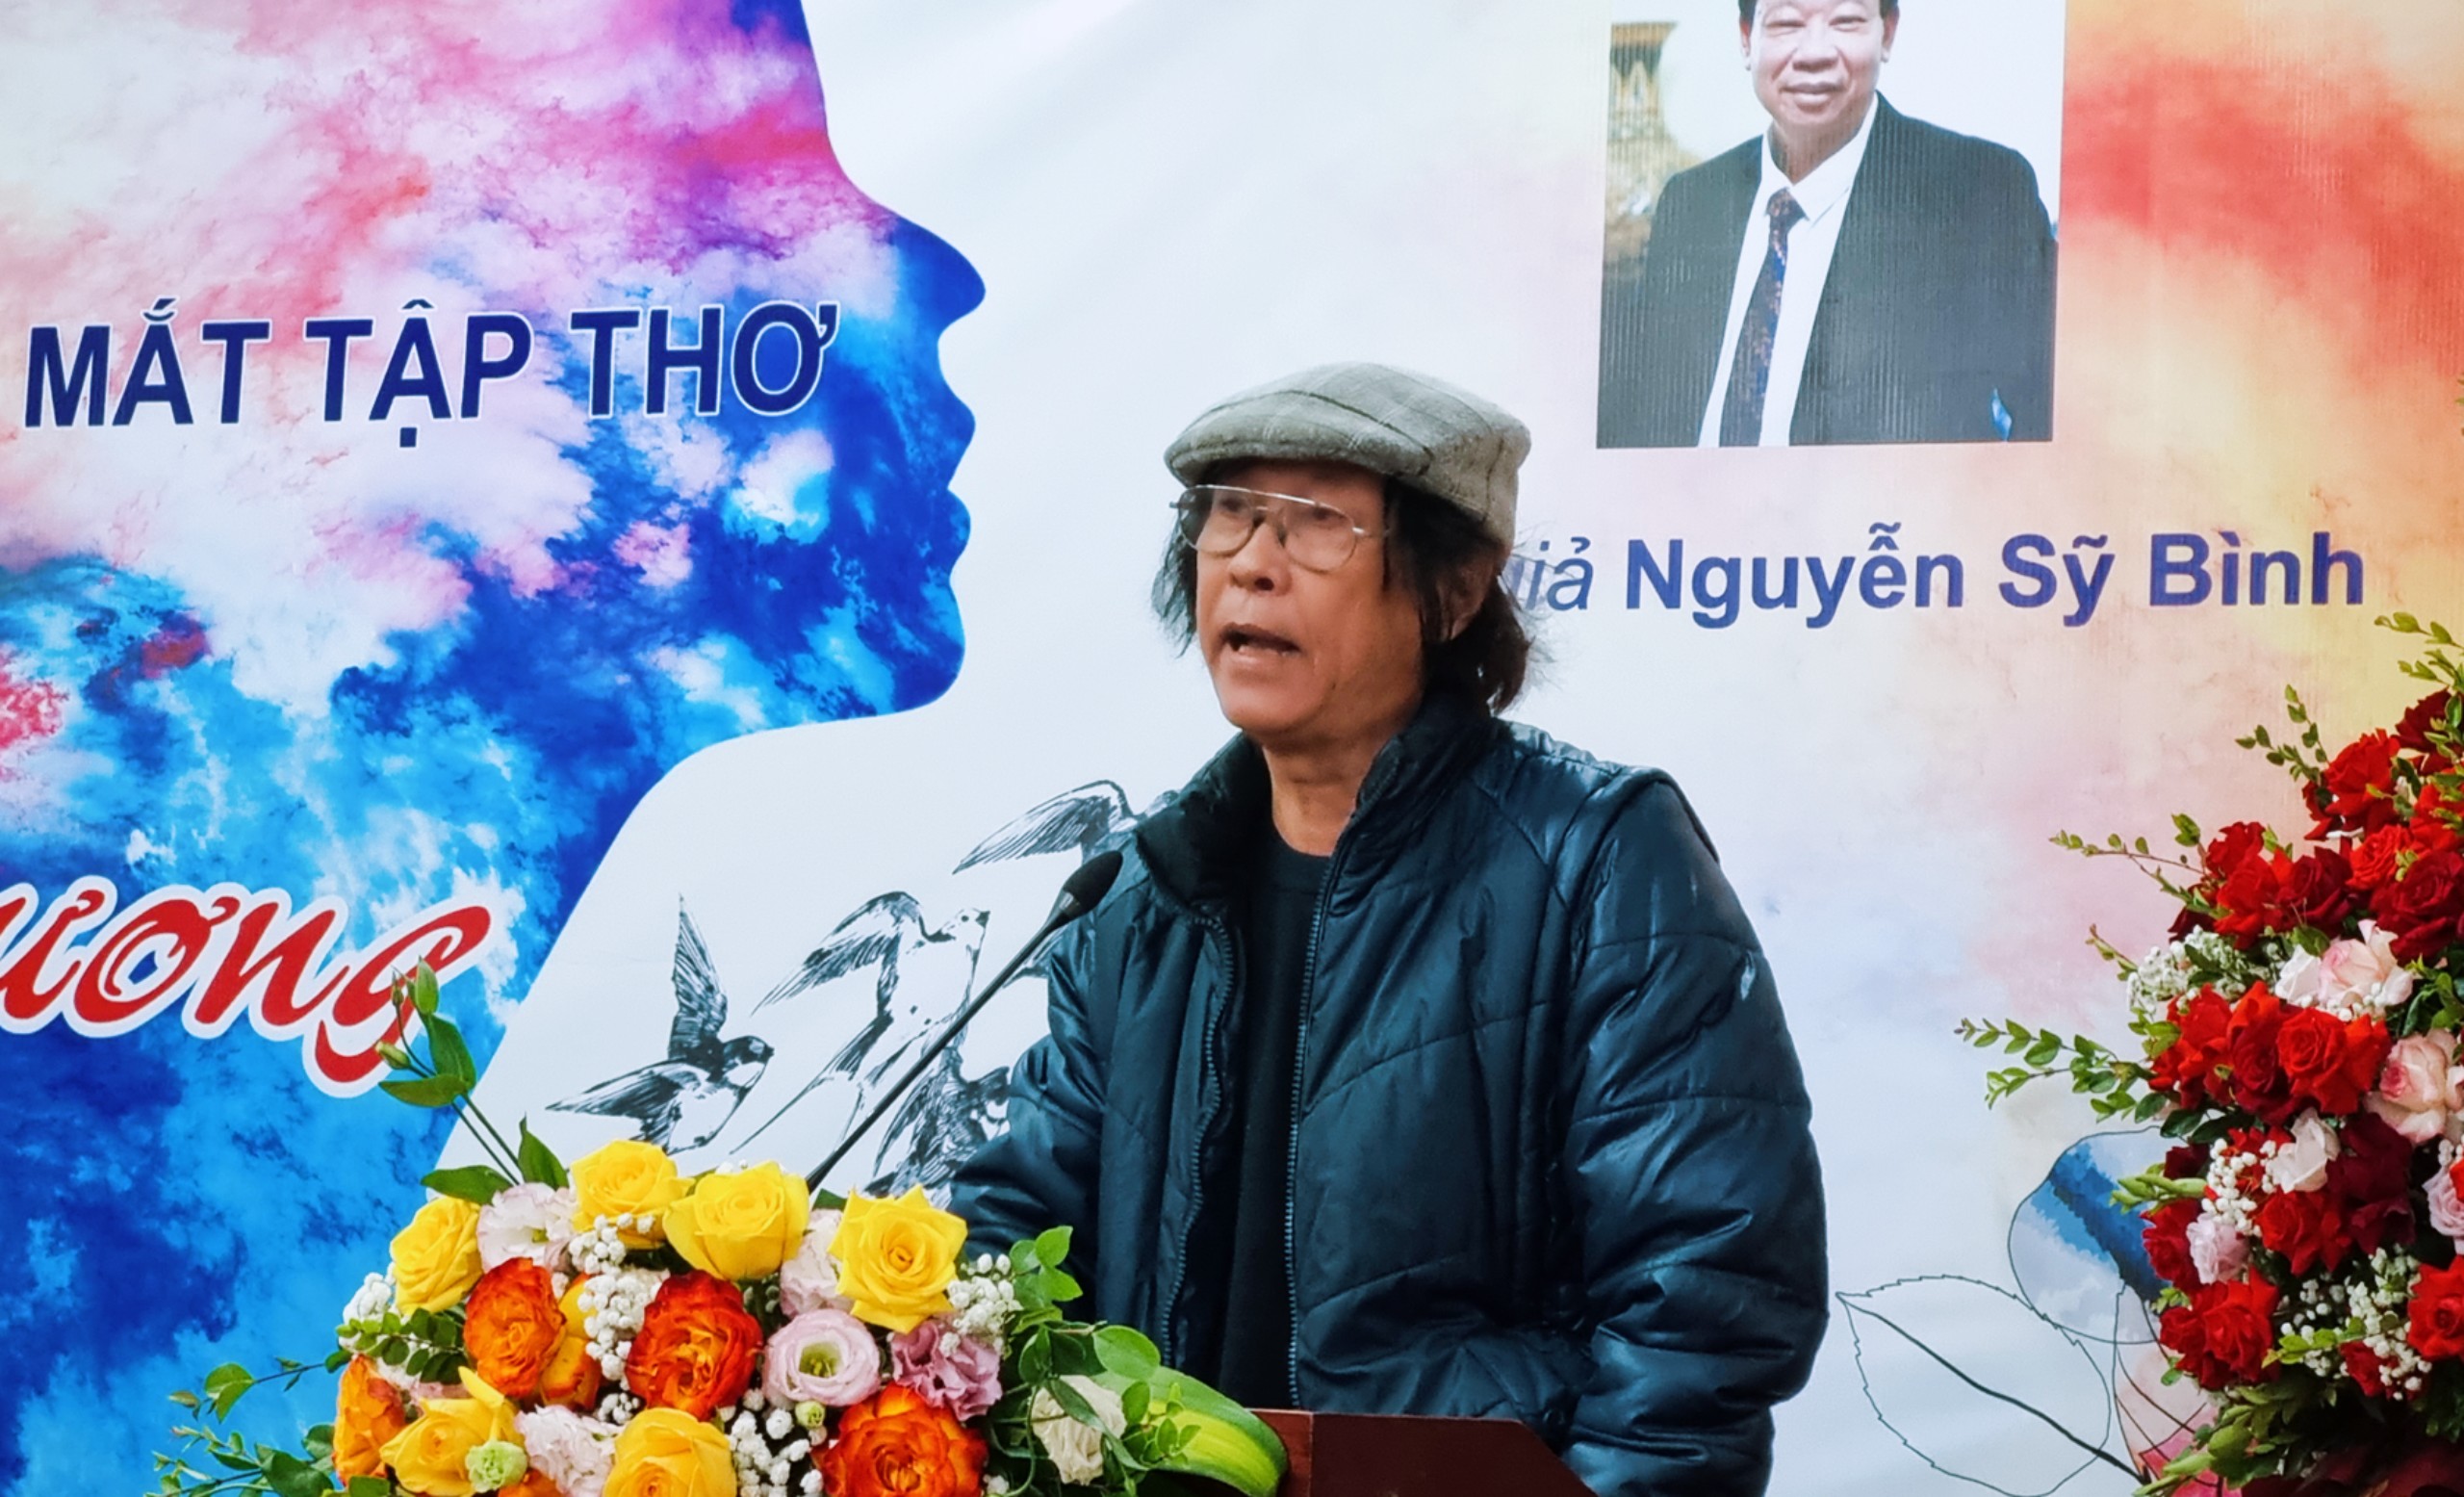 Ra mắt tập thơ “Còn lại yêu thương” của tác giả Nguyễn Sỹ Bình - 6